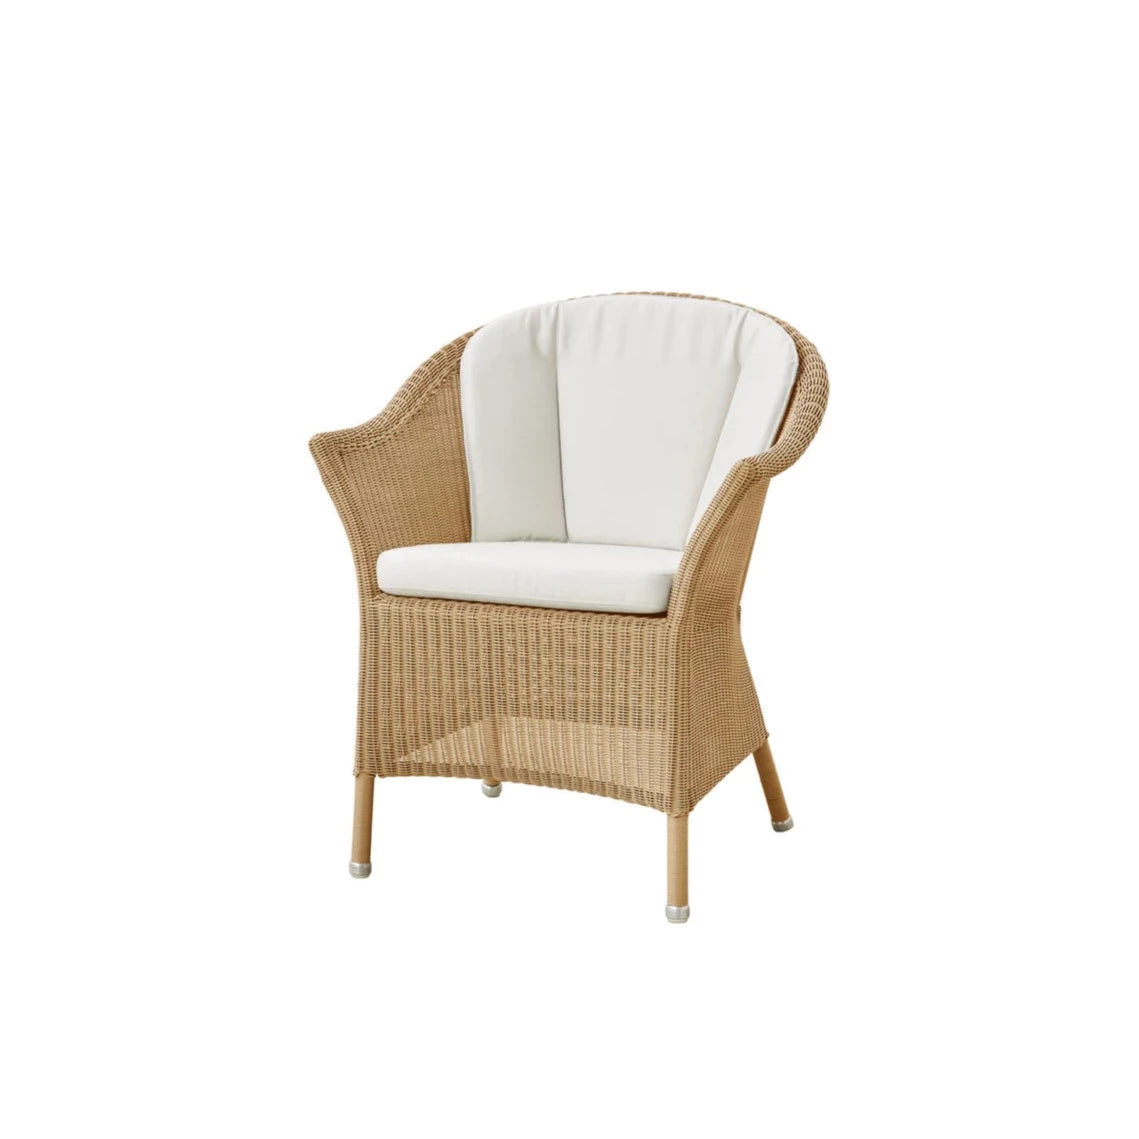 Cane-Line Lansing Stuhl, weiße Sitz- und Rückenpolster